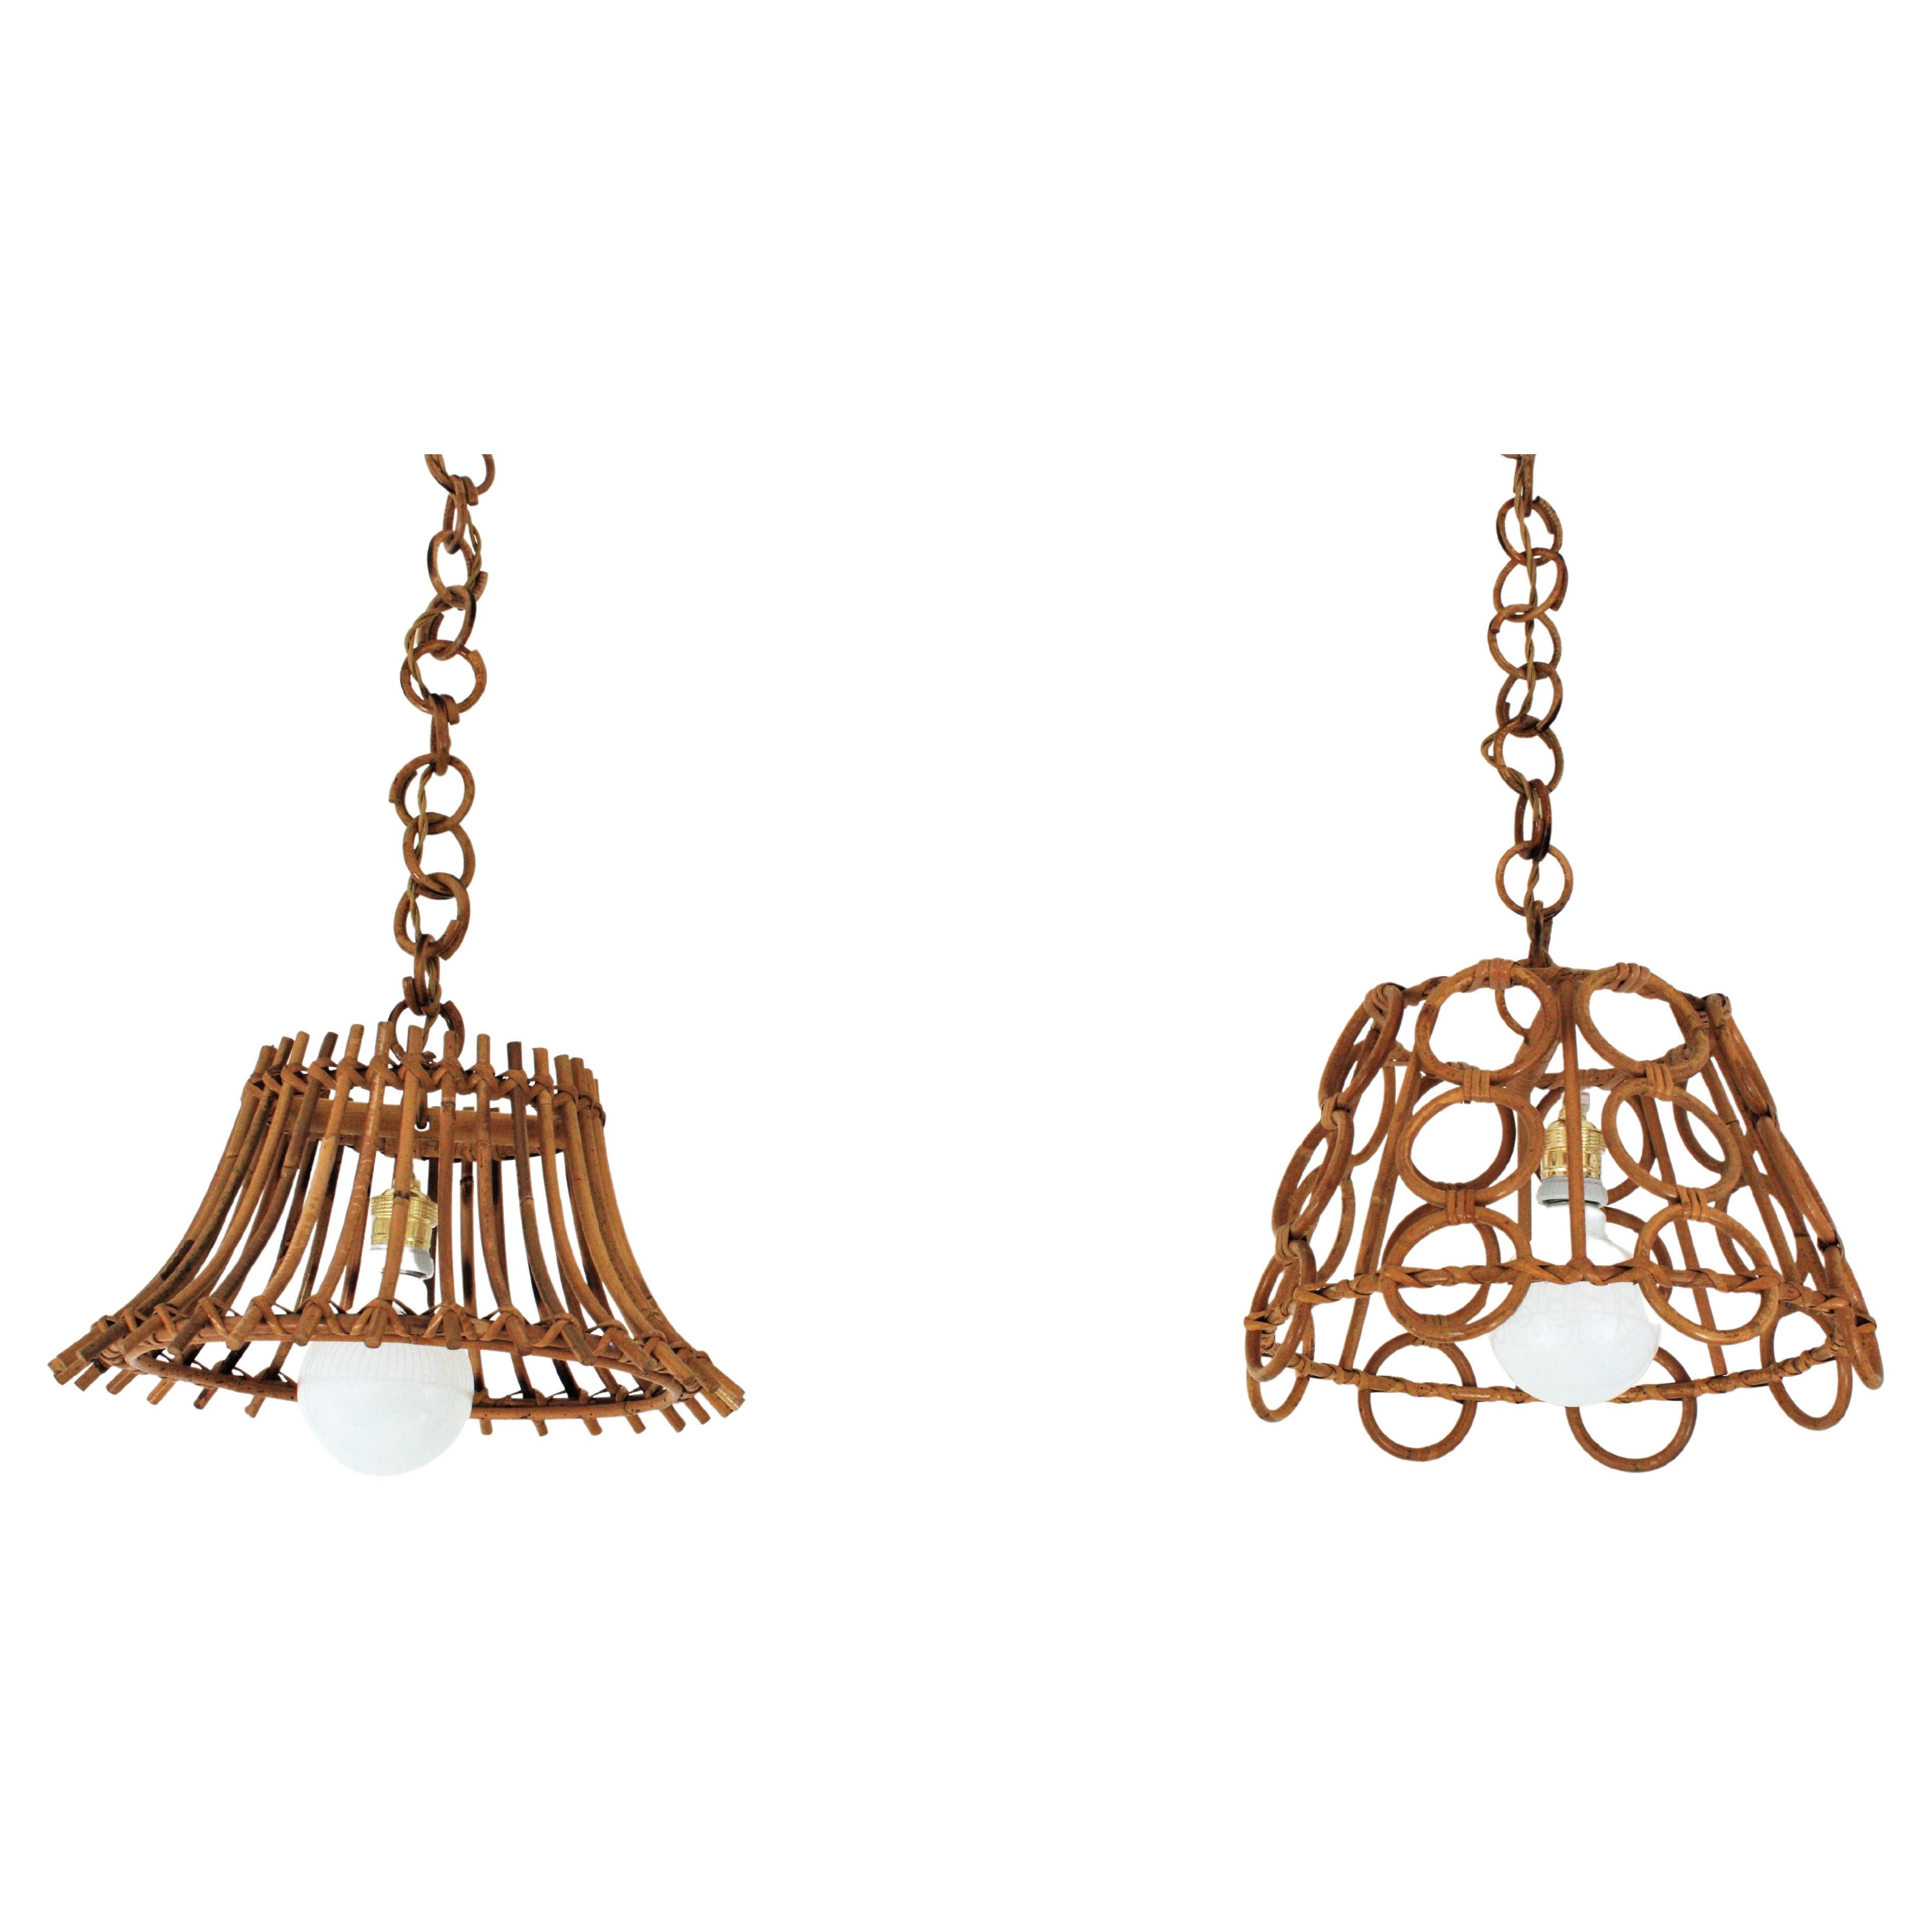 Belle paire de pendentifs en rotin avec des abat-jour coniques au design inégalé. Italie, années 1960.
Ces lampes ou lanternes à suspension présentent des abat-jour coniques fabriqués à partir de cannes de rotin. Elle possède un abat-jour en forme